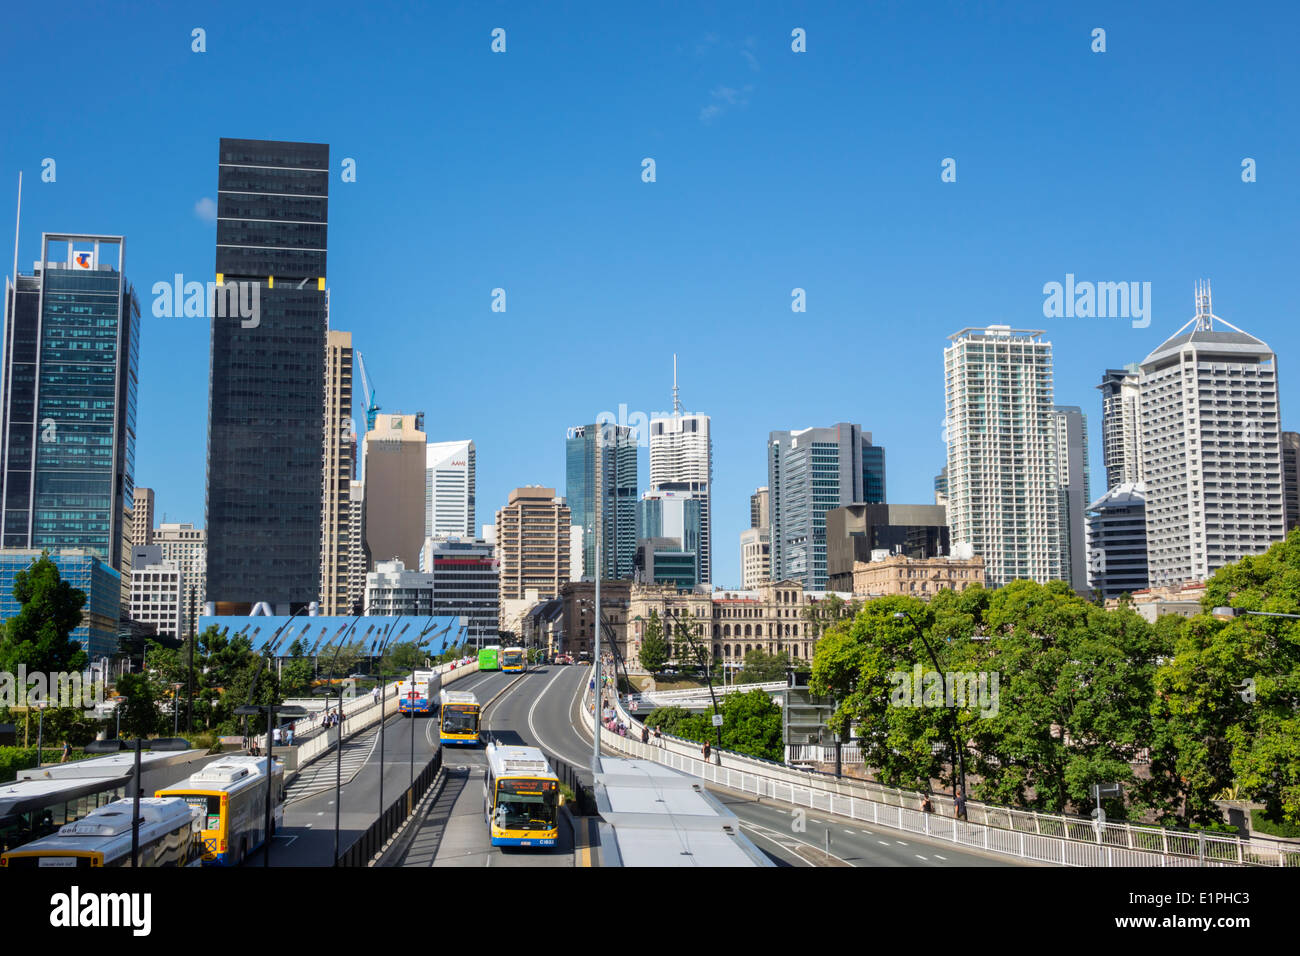 Brisbane Australien CBD, Victoria Bridge, Kulturzentrum, Zentrum, Busbahnhof, Skyline der Stadt, Wolkenkratzer, Gebäude, AU140314092 Stockfoto